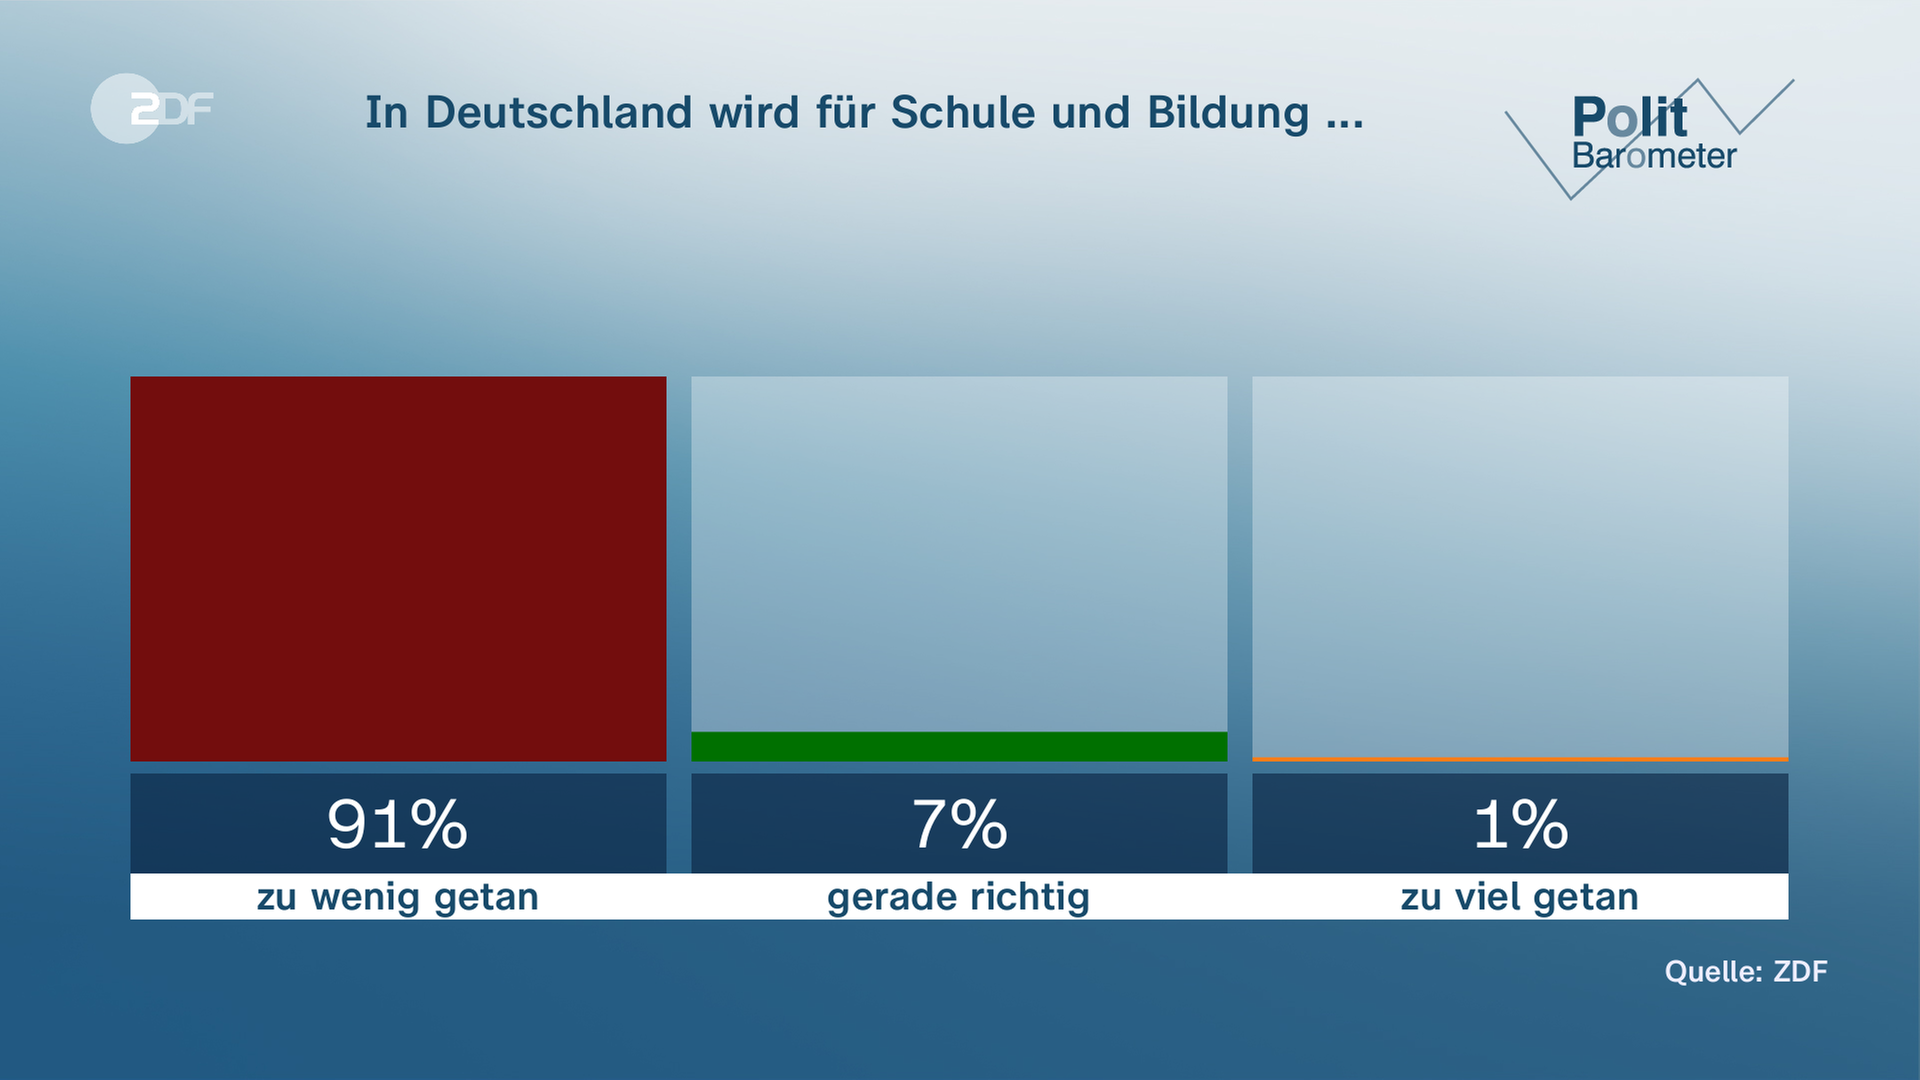 Politbarometer vom 17.03.2023, "In Deutschland wird für Schule und Bildung ..."